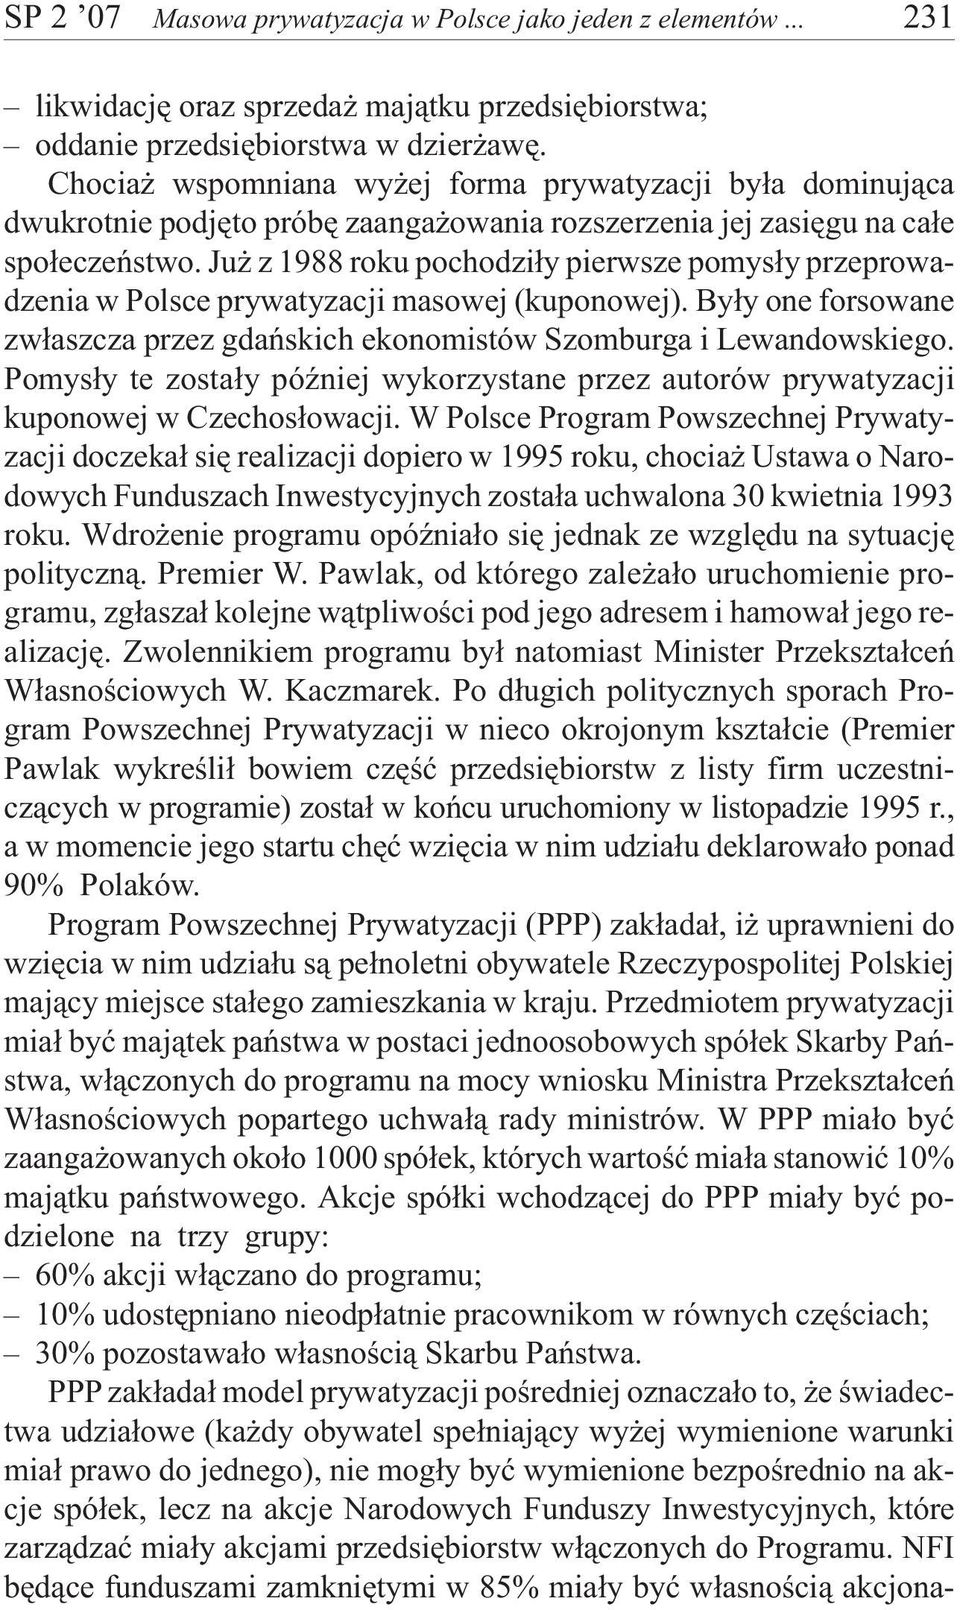 Ju z 1988 roku pochodzi³y pierwsze pomys³y przeprowadzenia w Polsce prywatyzacji masowej (kuponowej). By³y one forsowane zw³aszcza przez gdañskich ekonomistów Szomburga i Lewandowskiego.